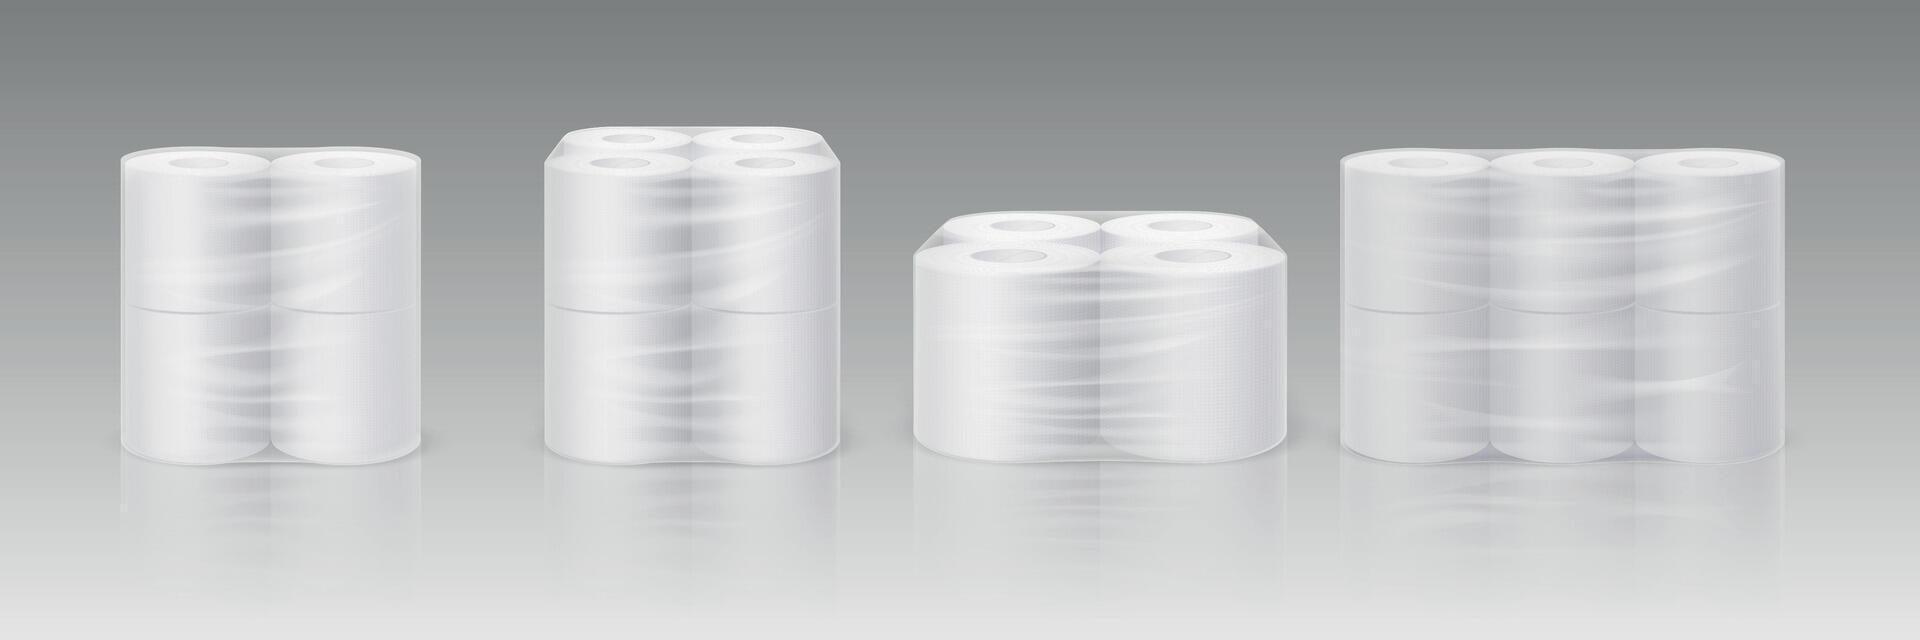 realista branco banheiro papel rolos dentro plástico pacote brincar. higiene limpeza lenços dentro transparente pacote. suave absorvente toalhas vetor conjunto